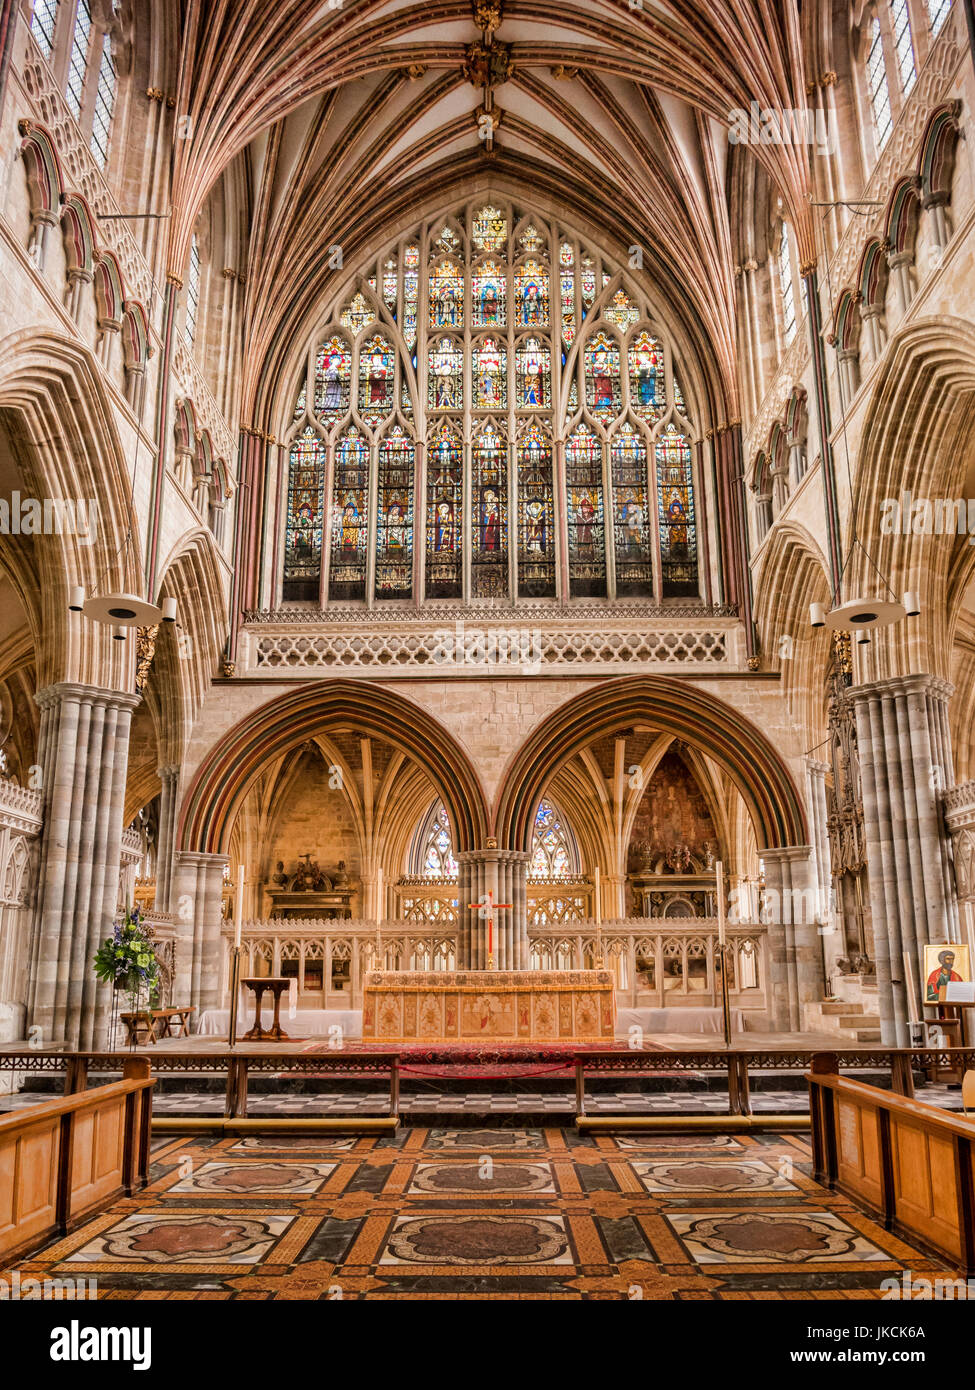 24 Juin 2017 : Exeter, Devon, UK - l'autel et à l'est de la fenêtre Cathédrale d'Exeter, Devon, Angleterre, vu de la chorale. Banque D'Images